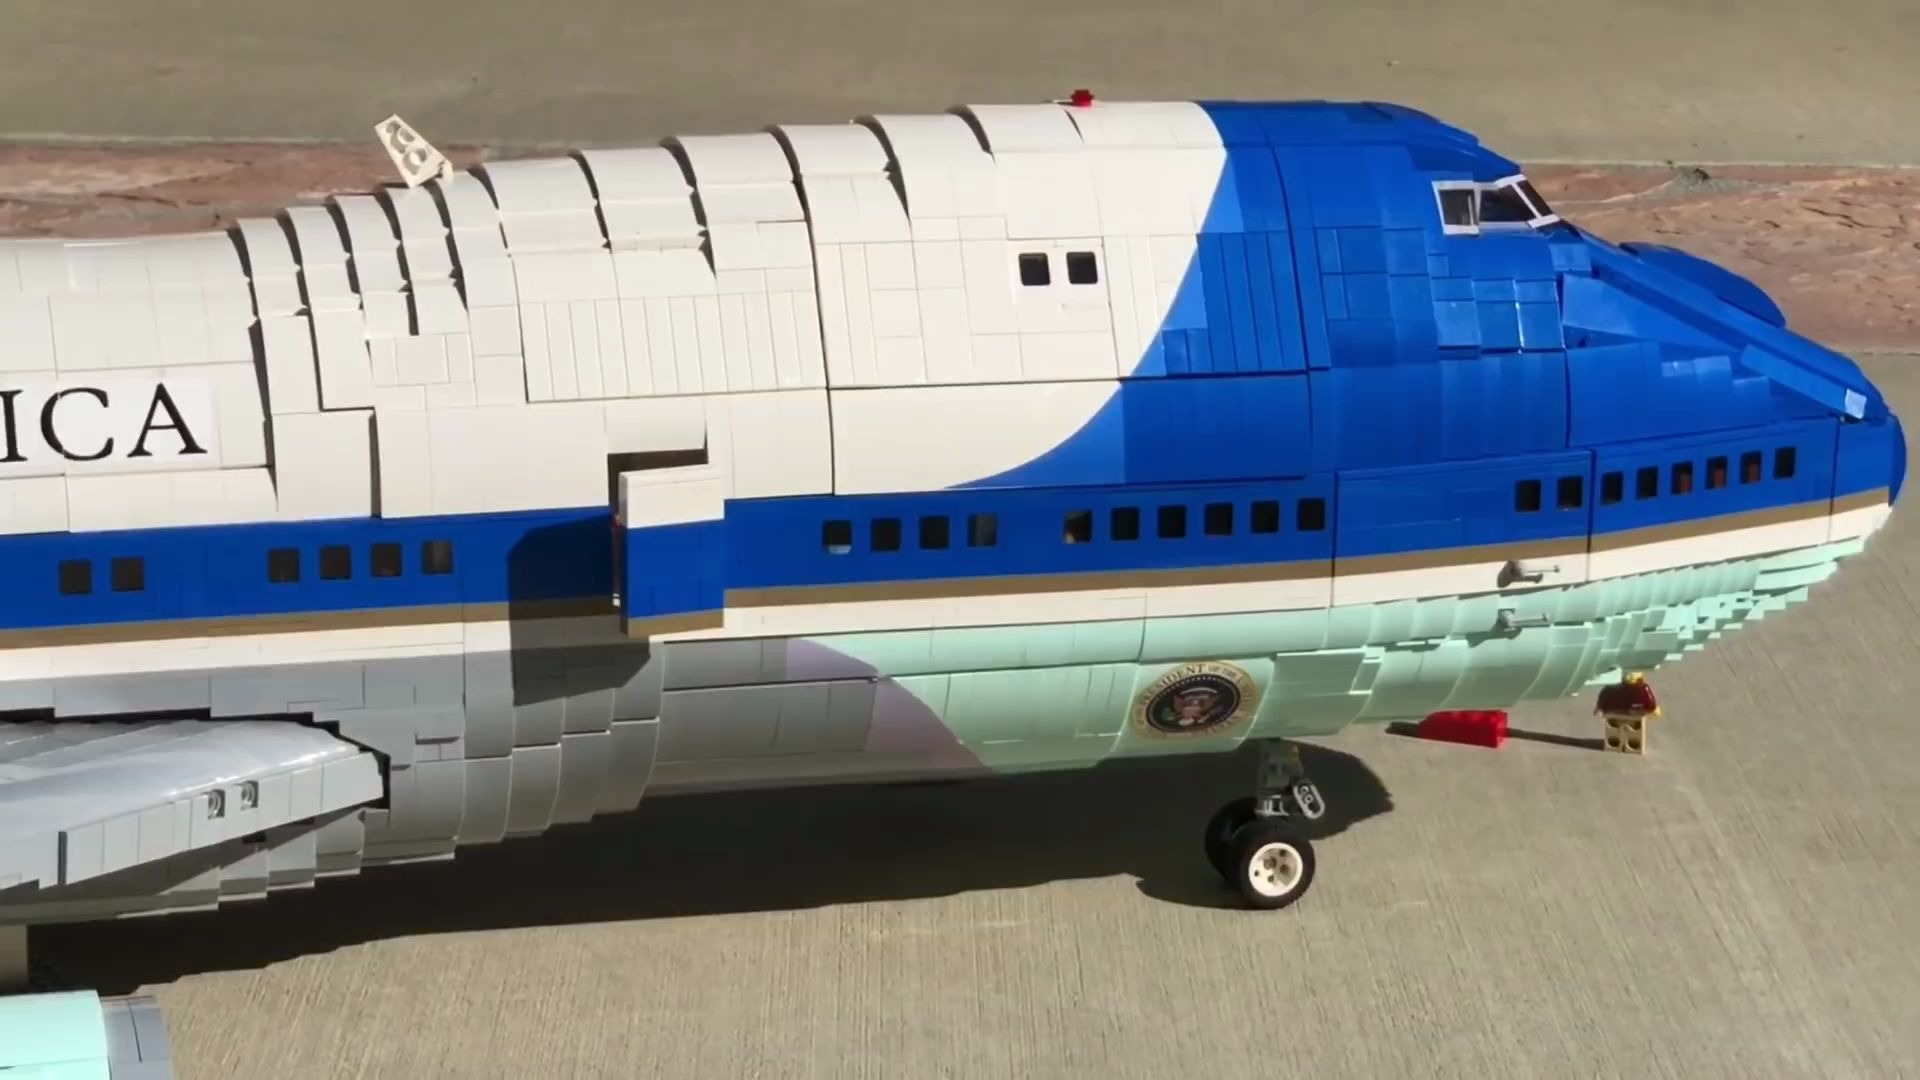 【拼砌大师】耗用25,000片乐高积木还原出人仔比例的美国总统座驾“空军一号”波音747